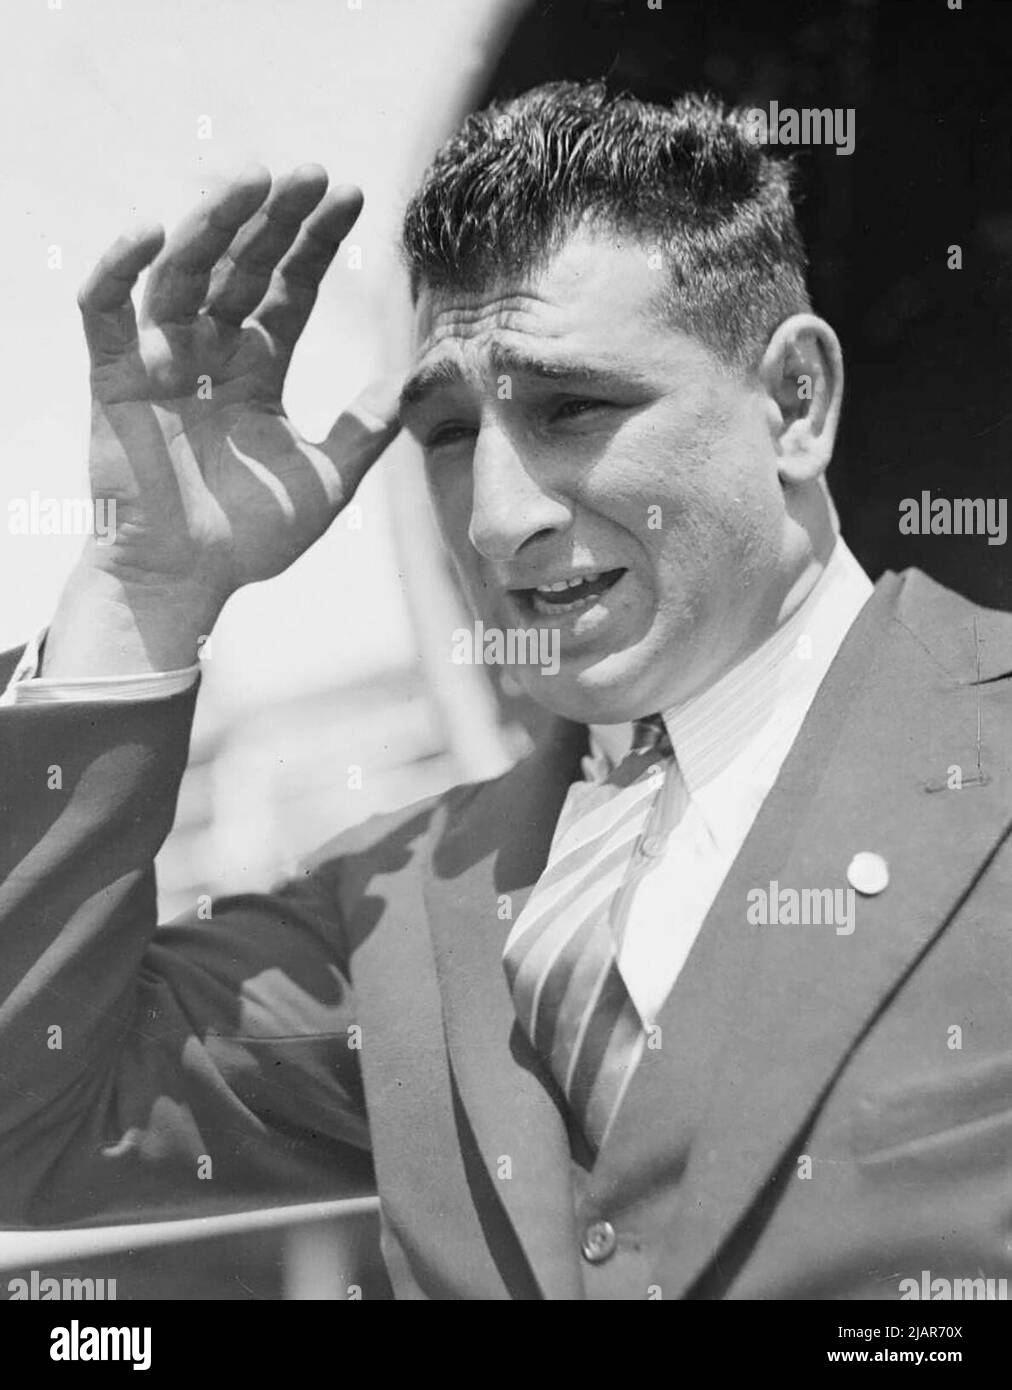 Foulard Eddie de lutte avec main sur le front, Nouvelle-Galles du Sud ca. 1930s Banque D'Images